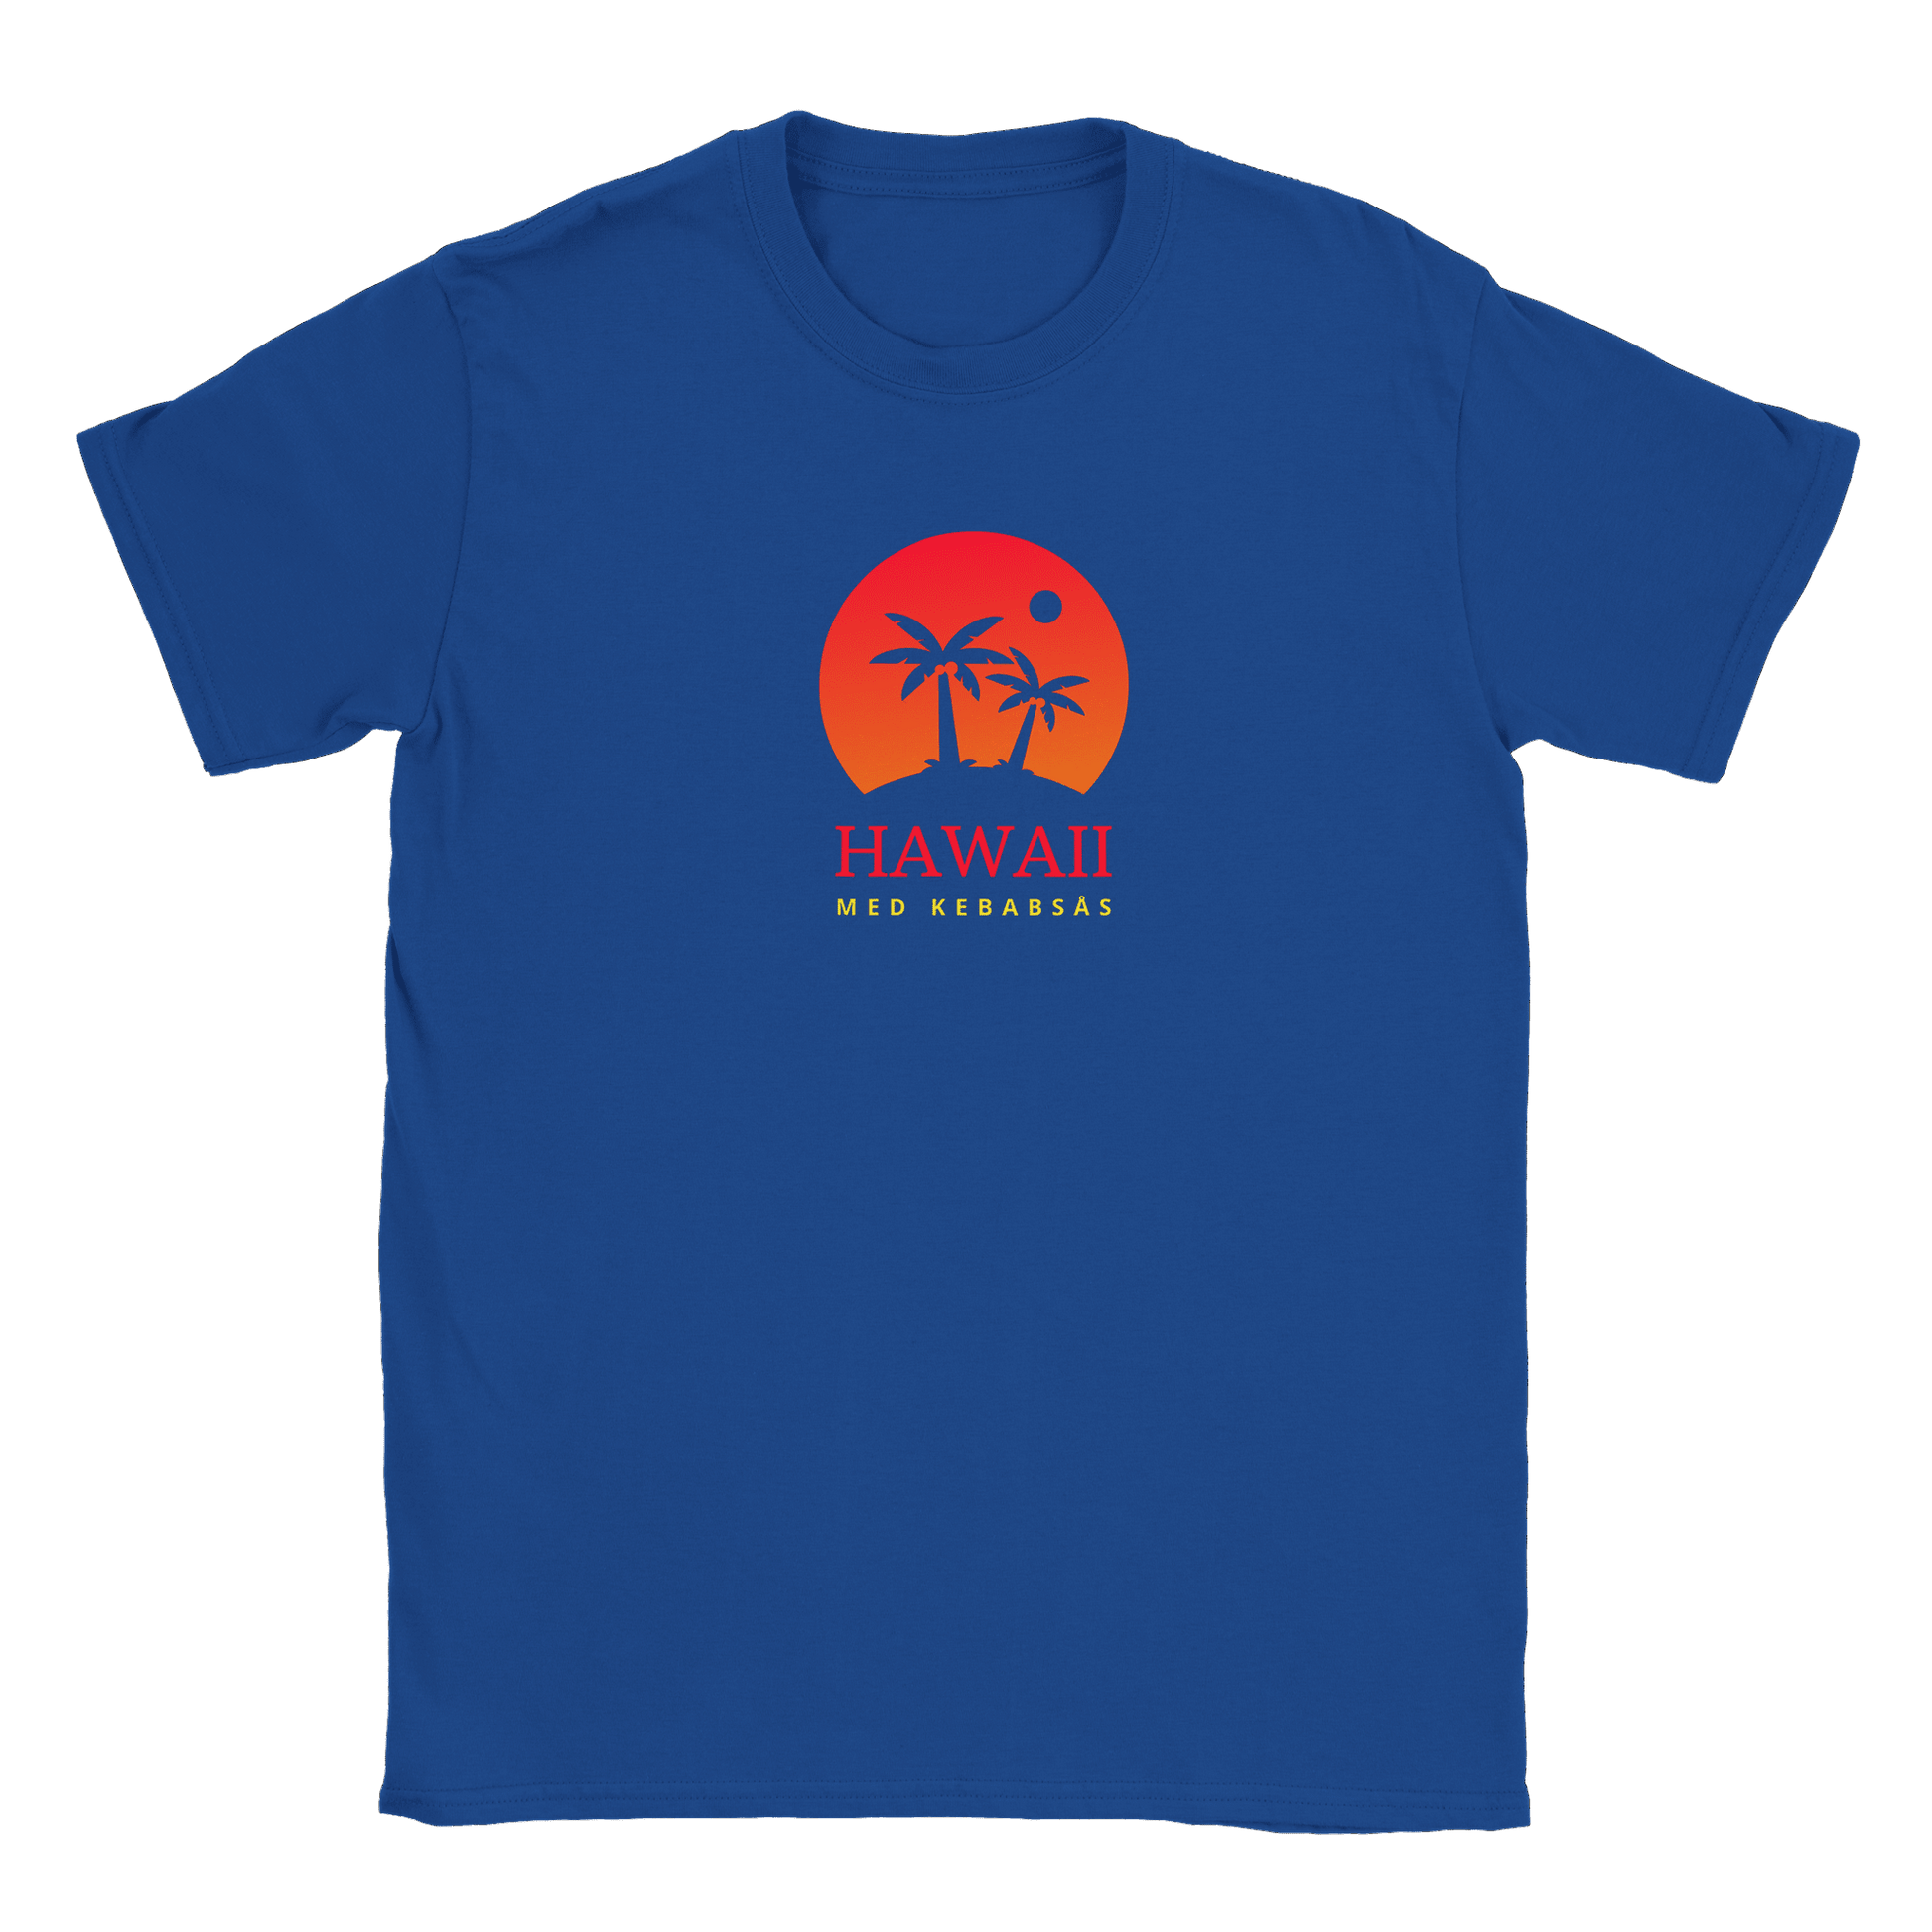 Hawaii med kebabsås - T-shirt Royal